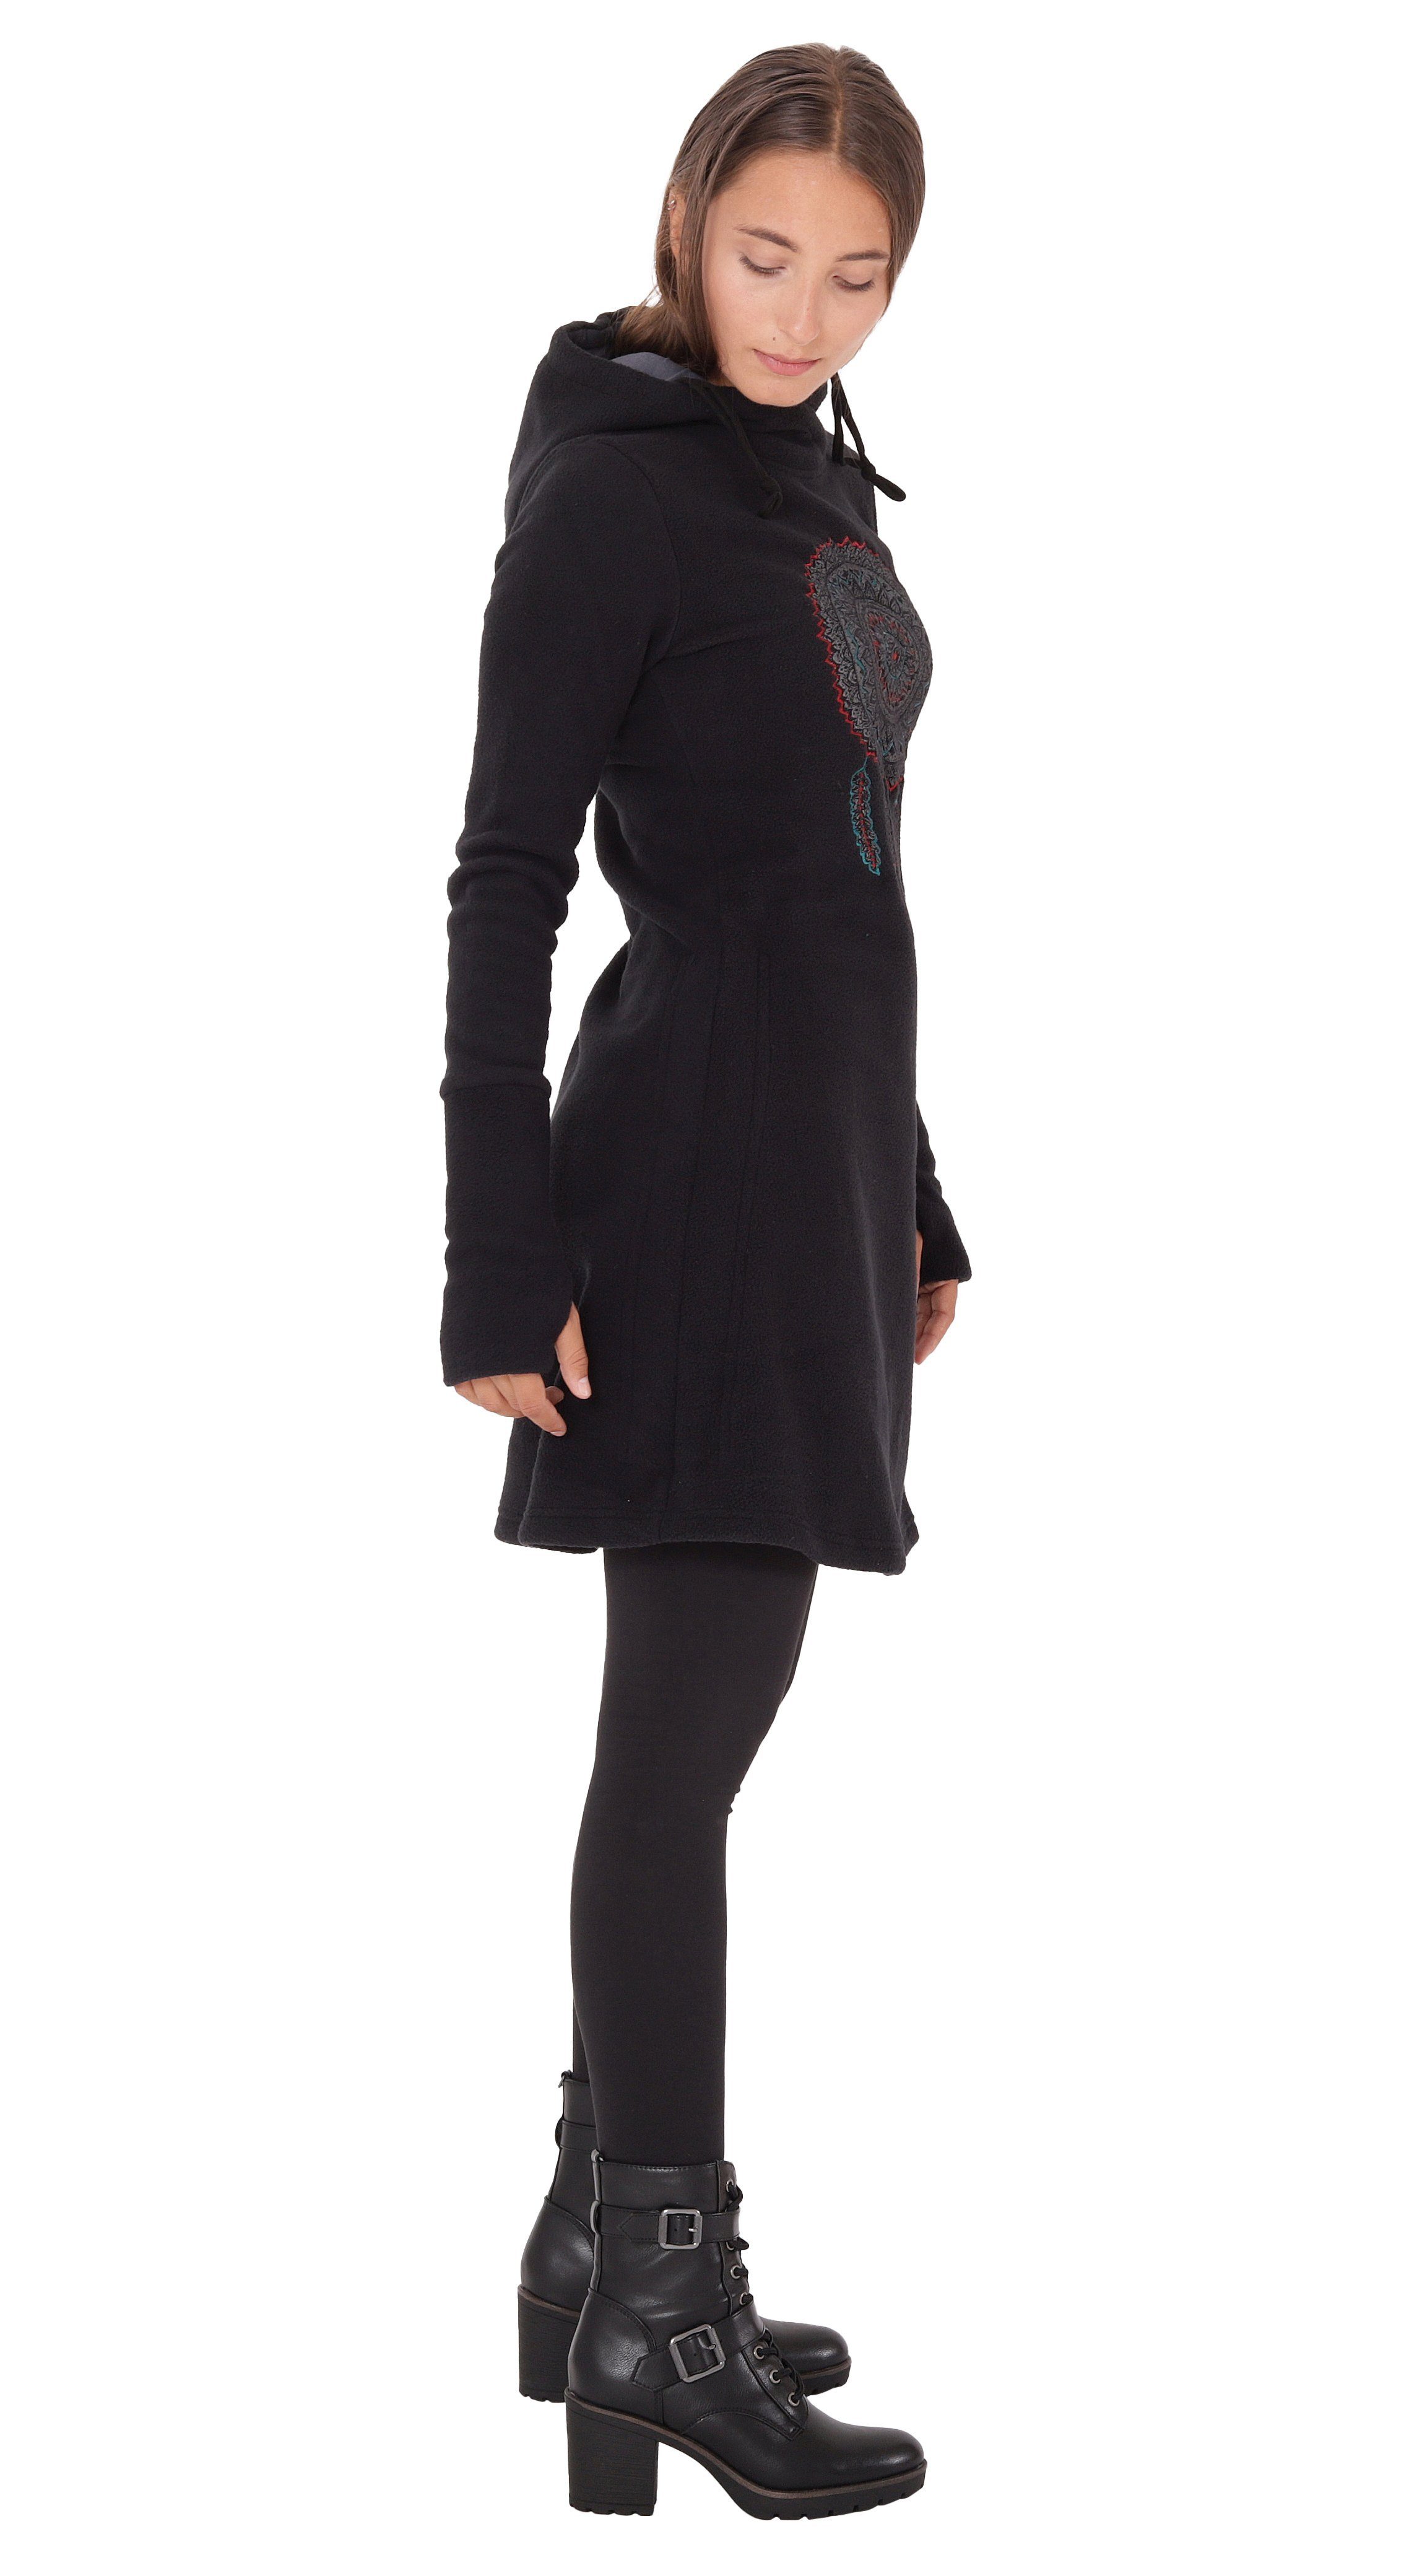 PUREWONDER A-Linien-Kleid Kapuzenkleid Traumfänger Schwarz dr31 Fleece Winterkleid mit